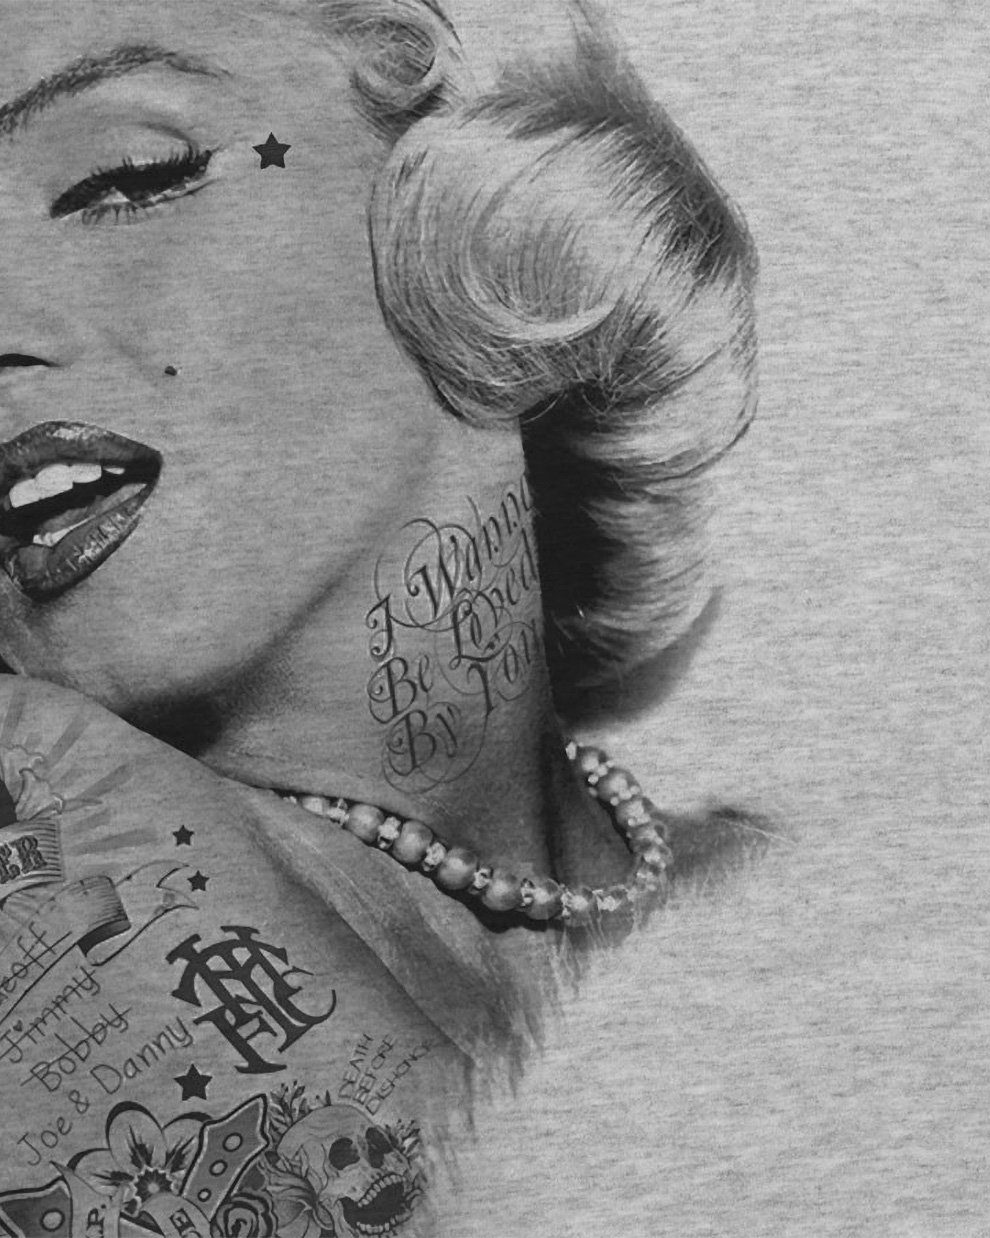 Herren Print-Shirt style3 tätowiert monroe grau Marilyn star Tattoo punk rock gun marylin inked T-Shirt meliert